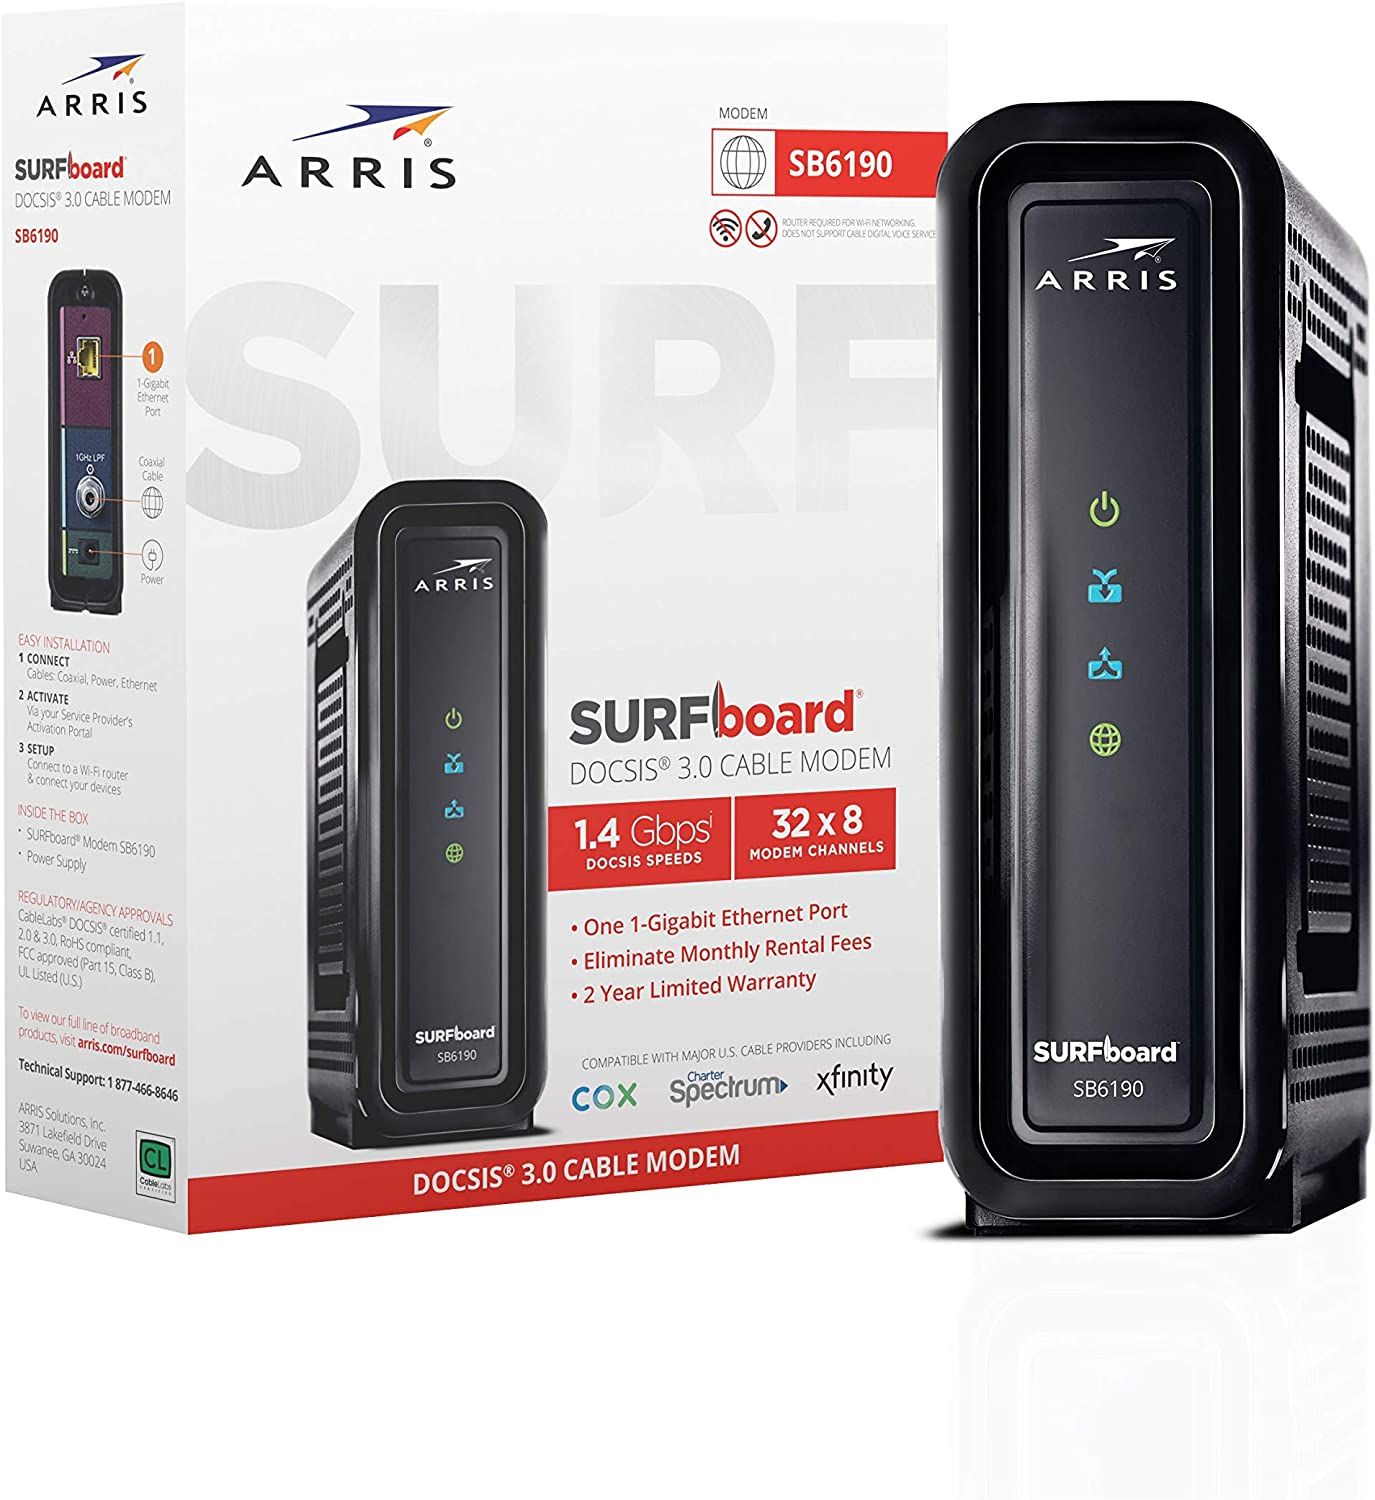 ARRIS-SURFboard-1